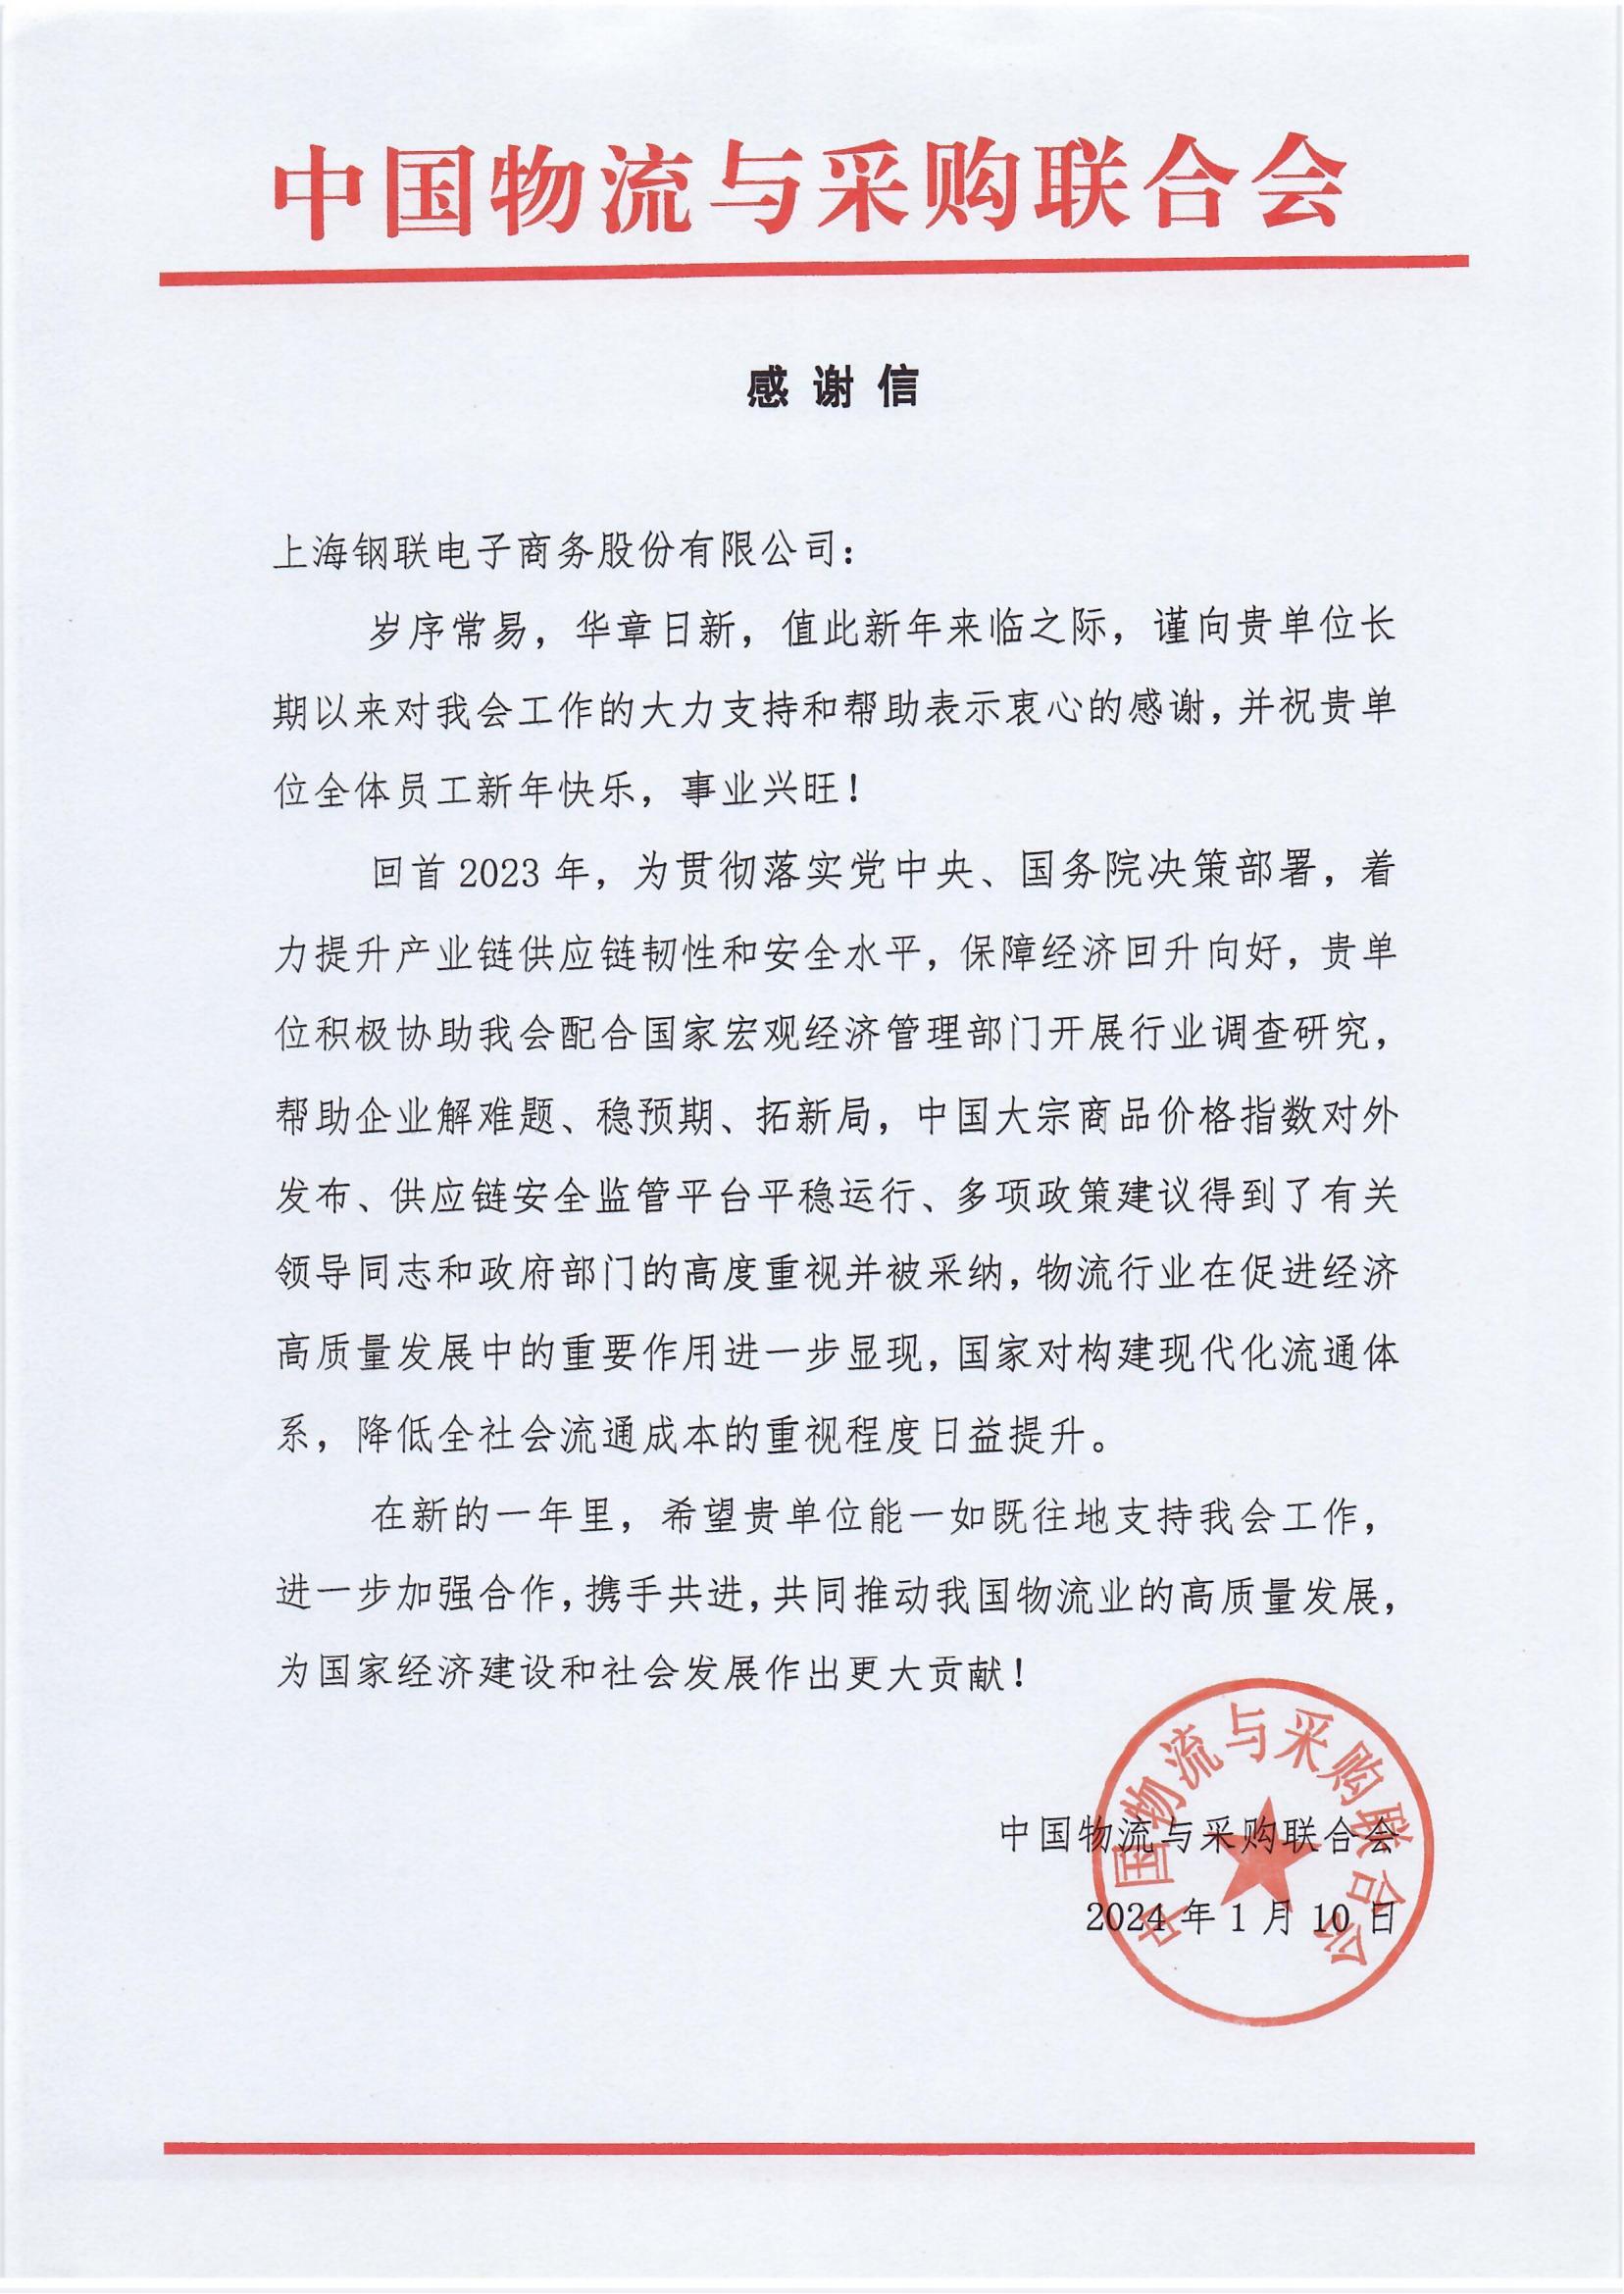 上海钢联收到中国物流与采购联合会感谢信